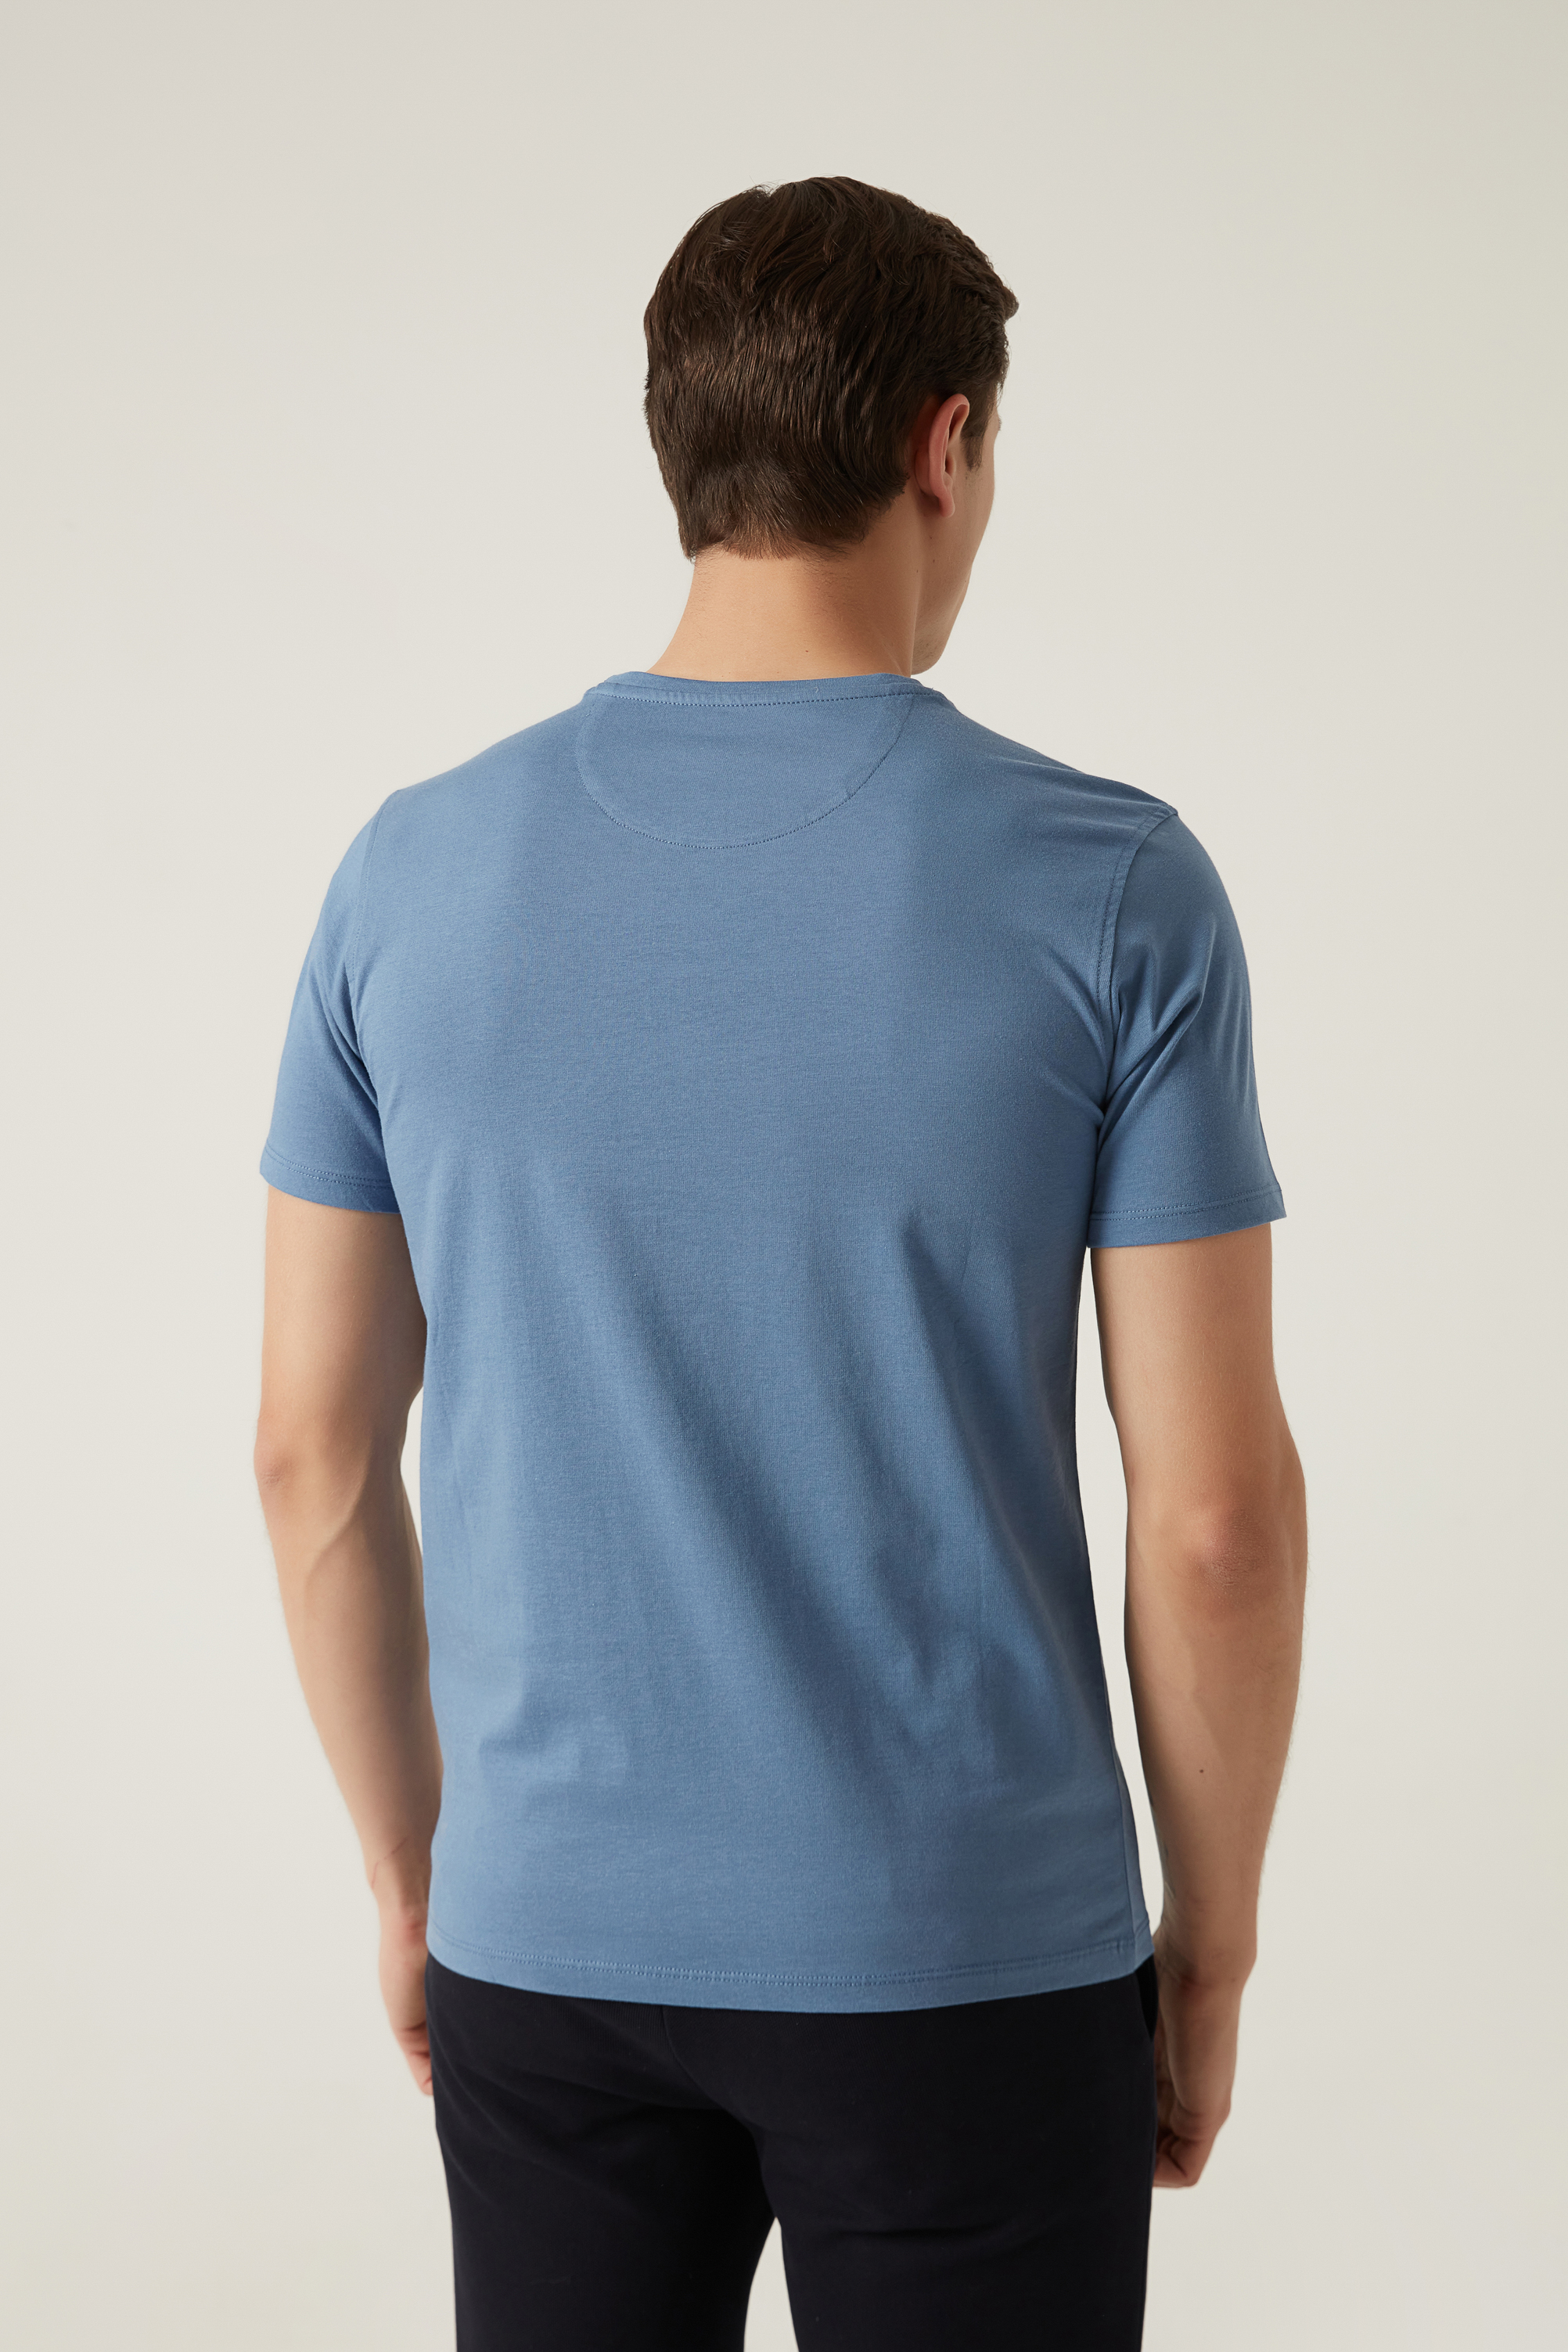 Damat Tween Damat Mavi T-shirt. 4